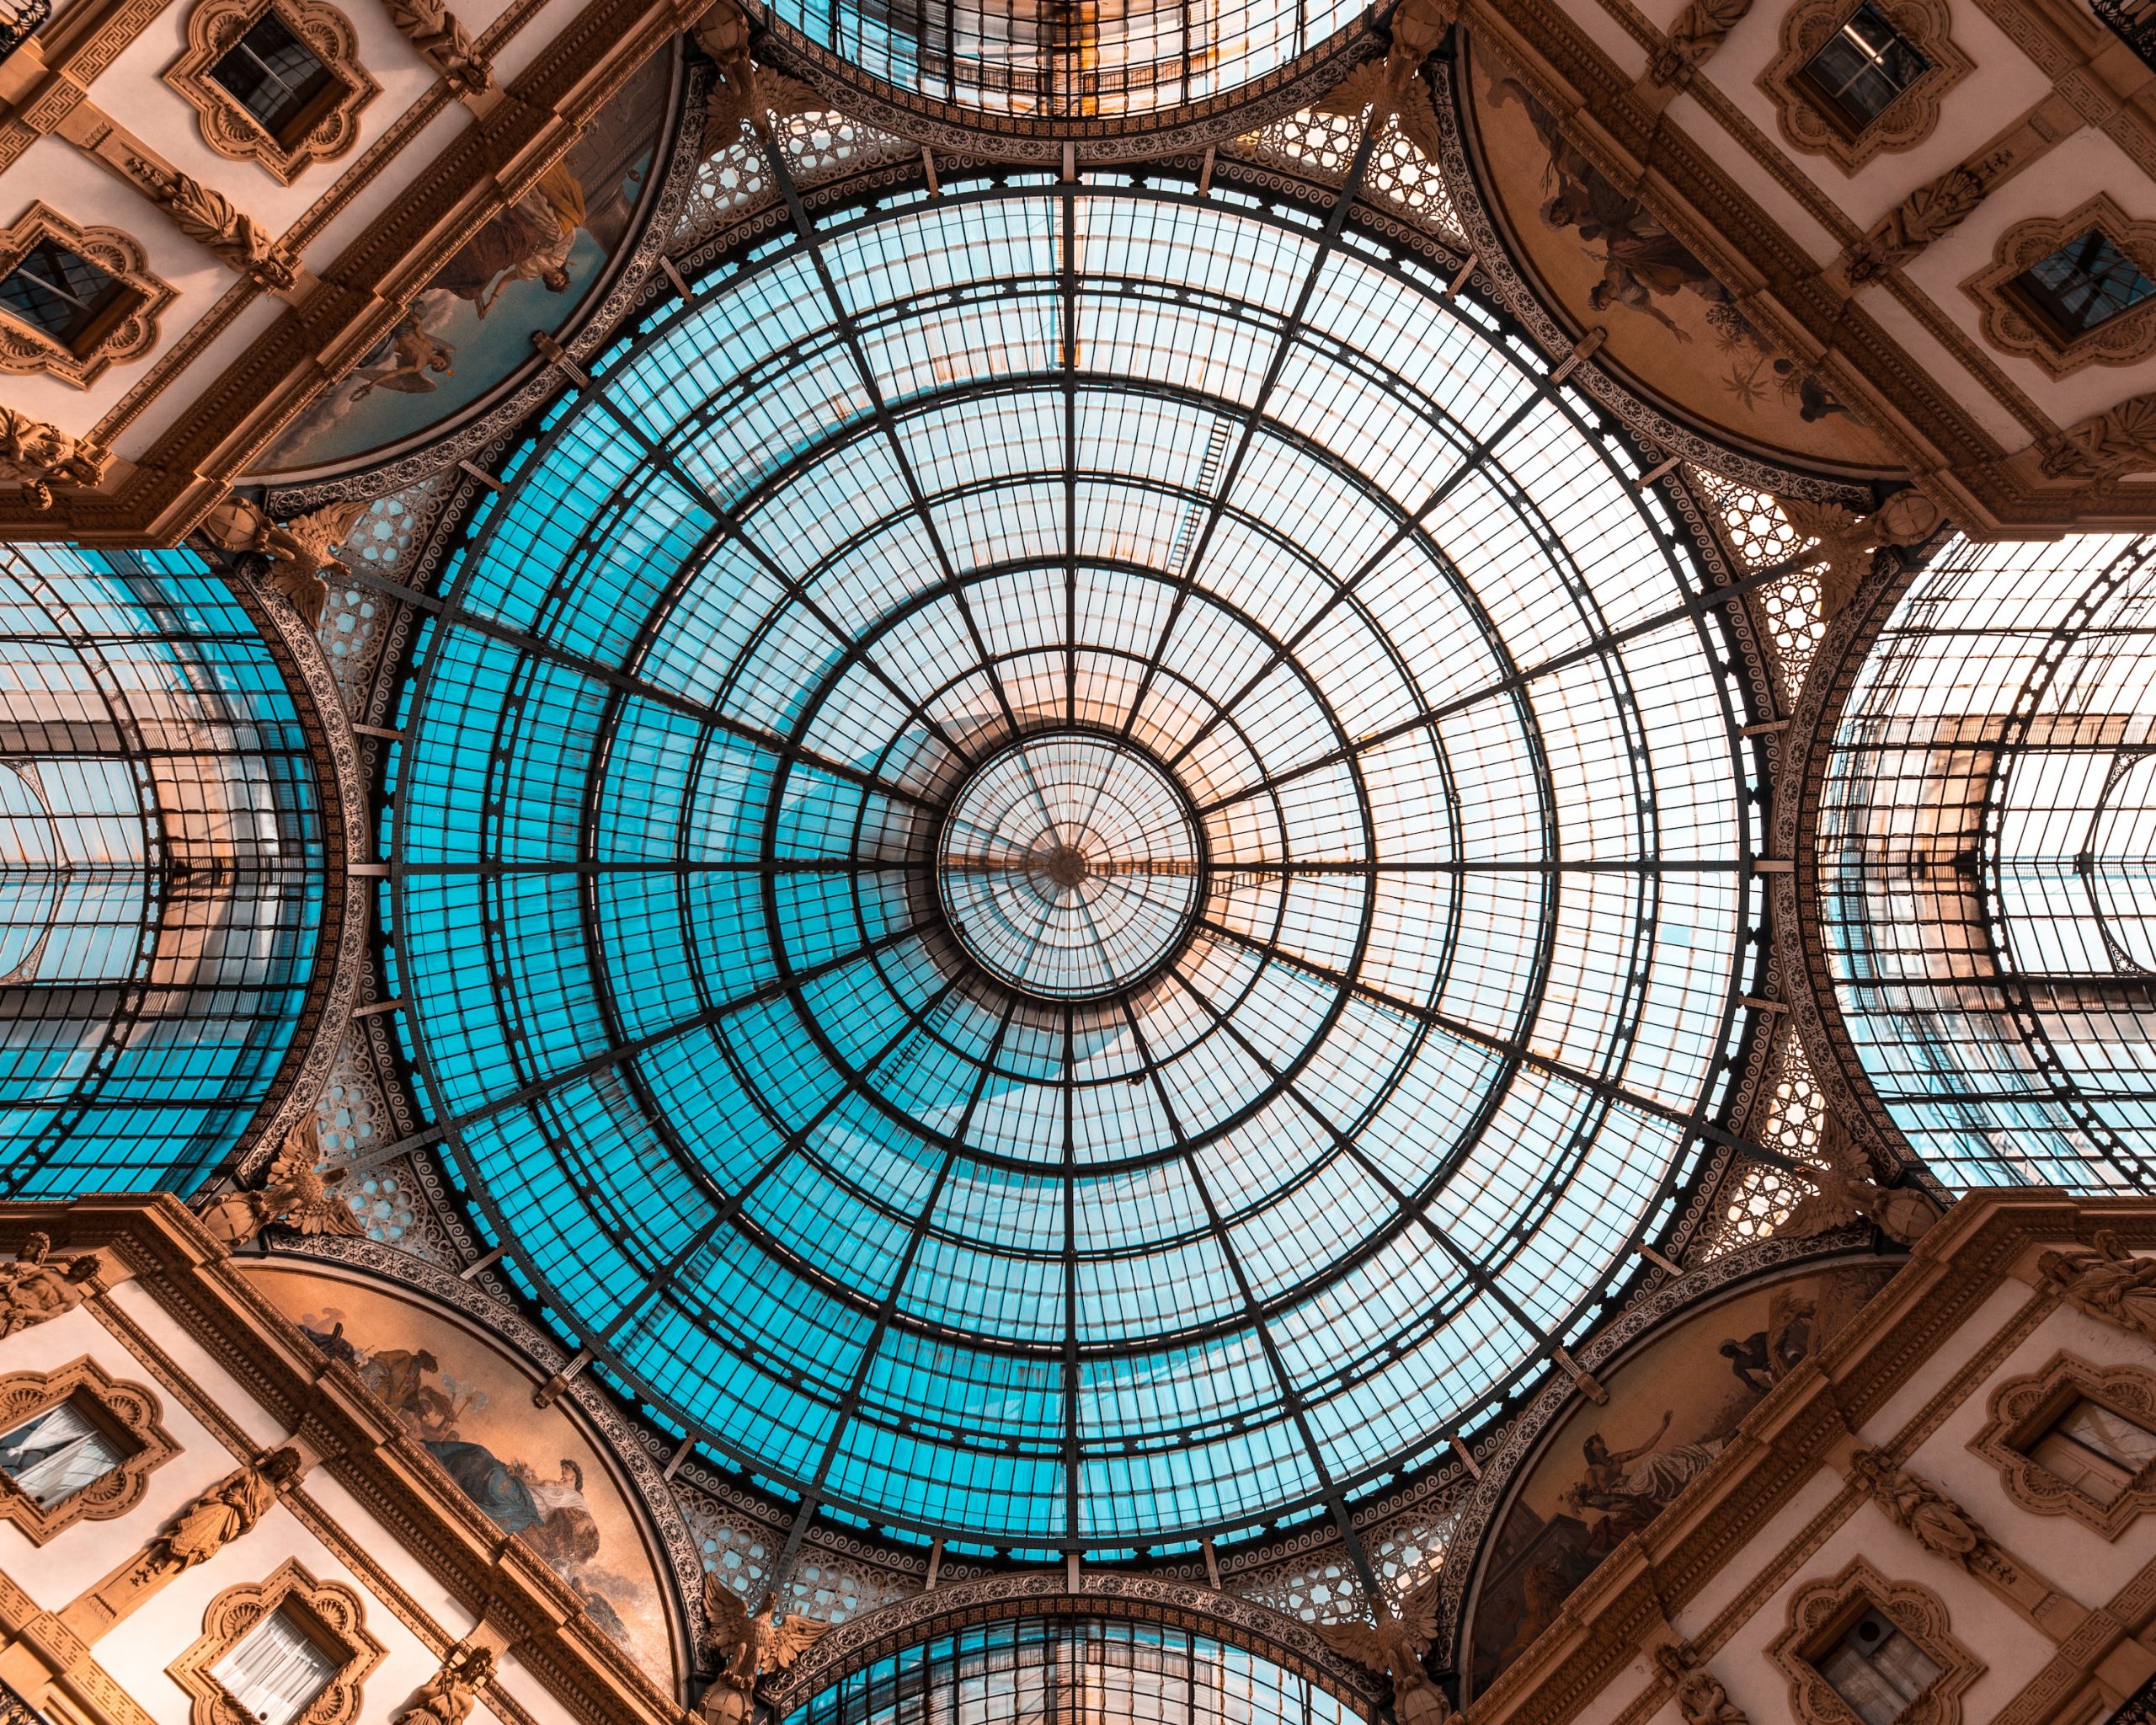 Fotografia della volta della Galleria Vittorio Emanuele II di Milano